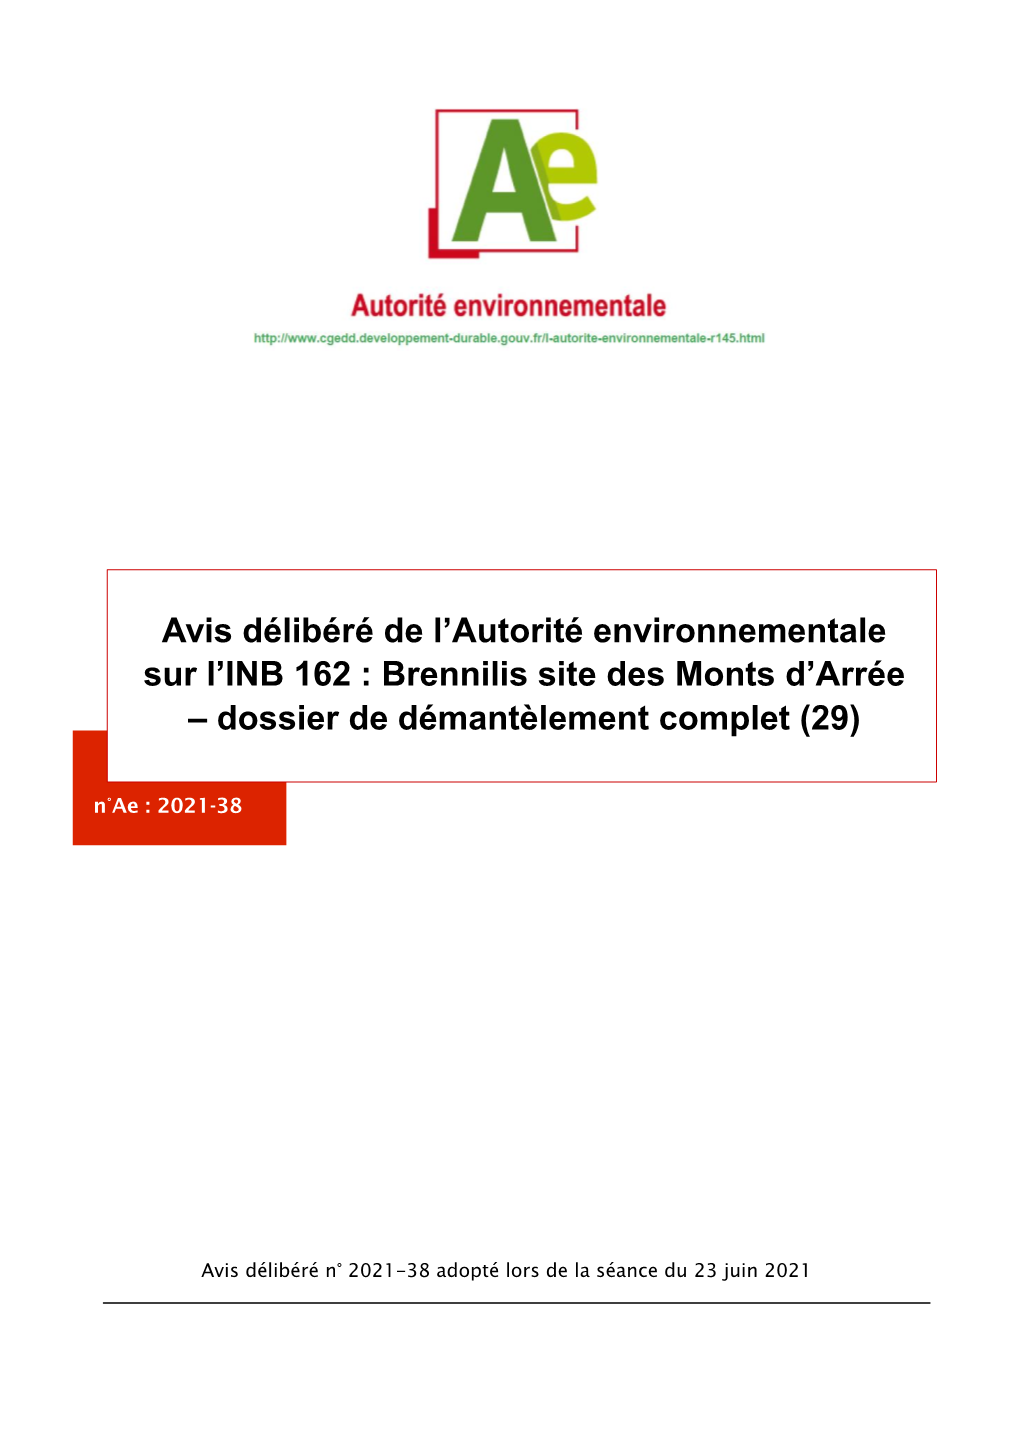 Avis Délibéré De L’Autorité Environnementale Sur L’INB 162 : Brennilis Site Des Monts D’Arrée – Dossier De Démantèlement Complet (29) N°Ae : 2021-38